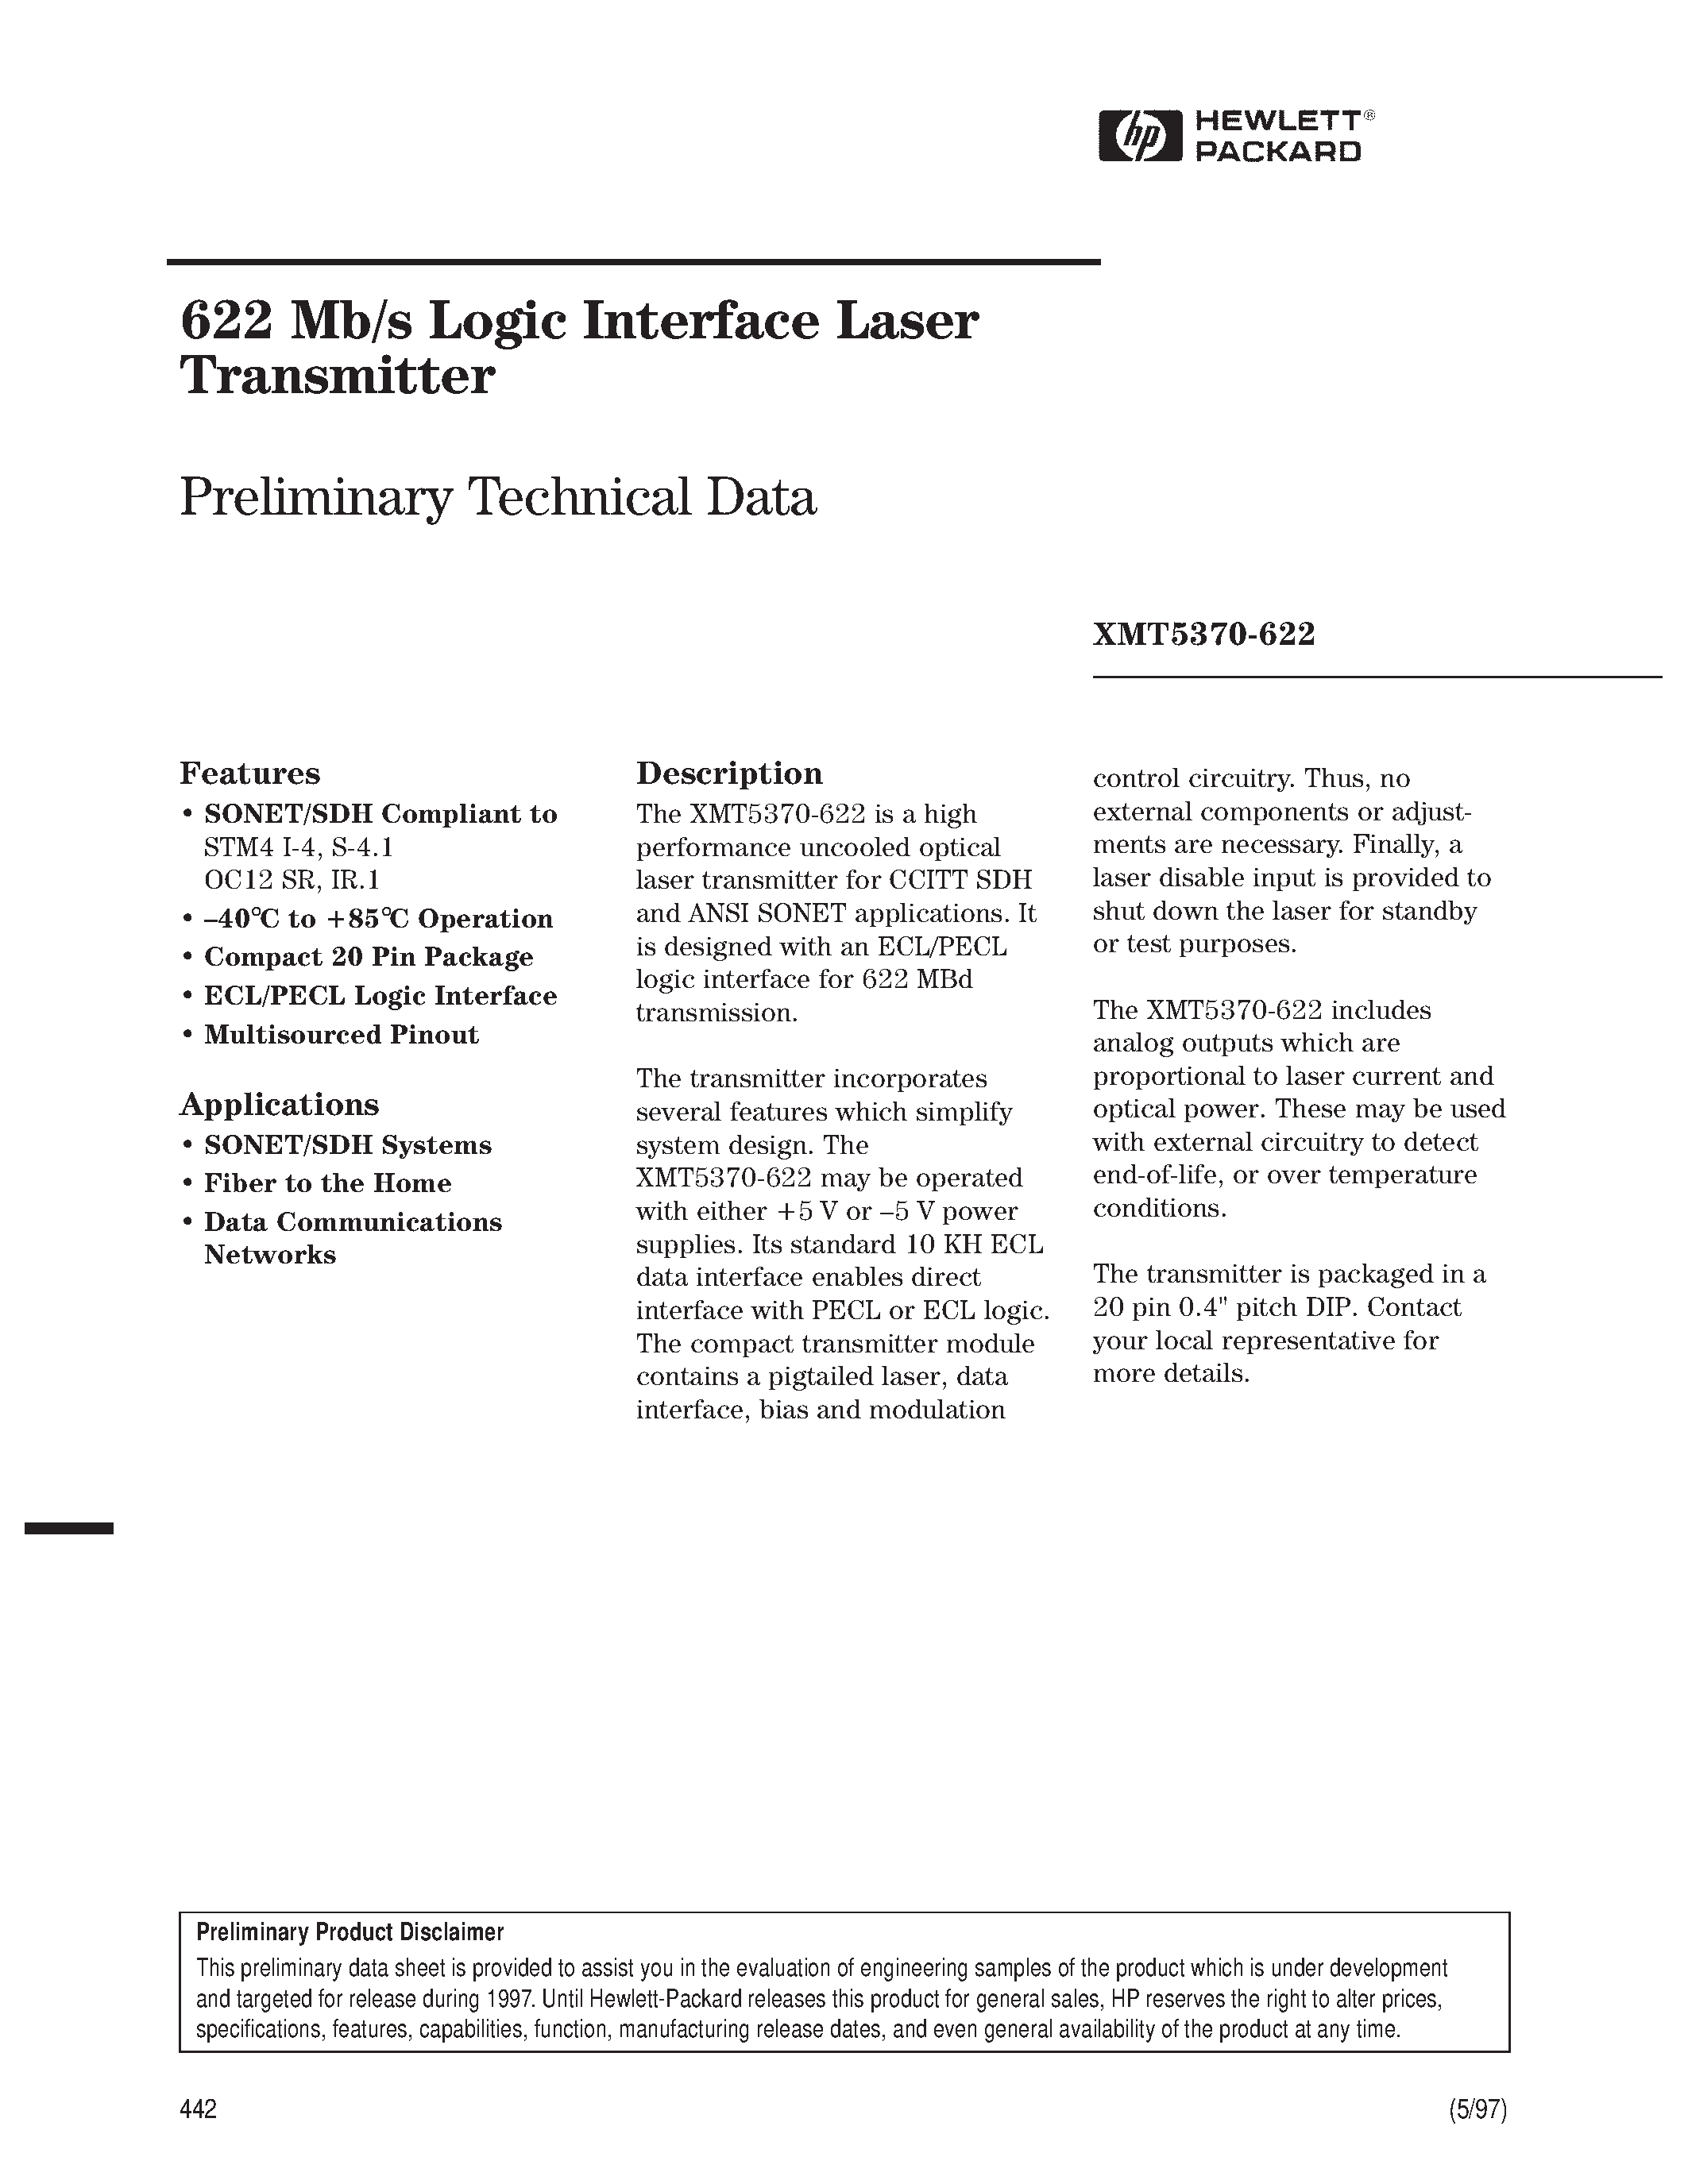 Datasheet XMT5160B-622-SC - 622 Mb/s Logic Interface Laser Transmitter page 1